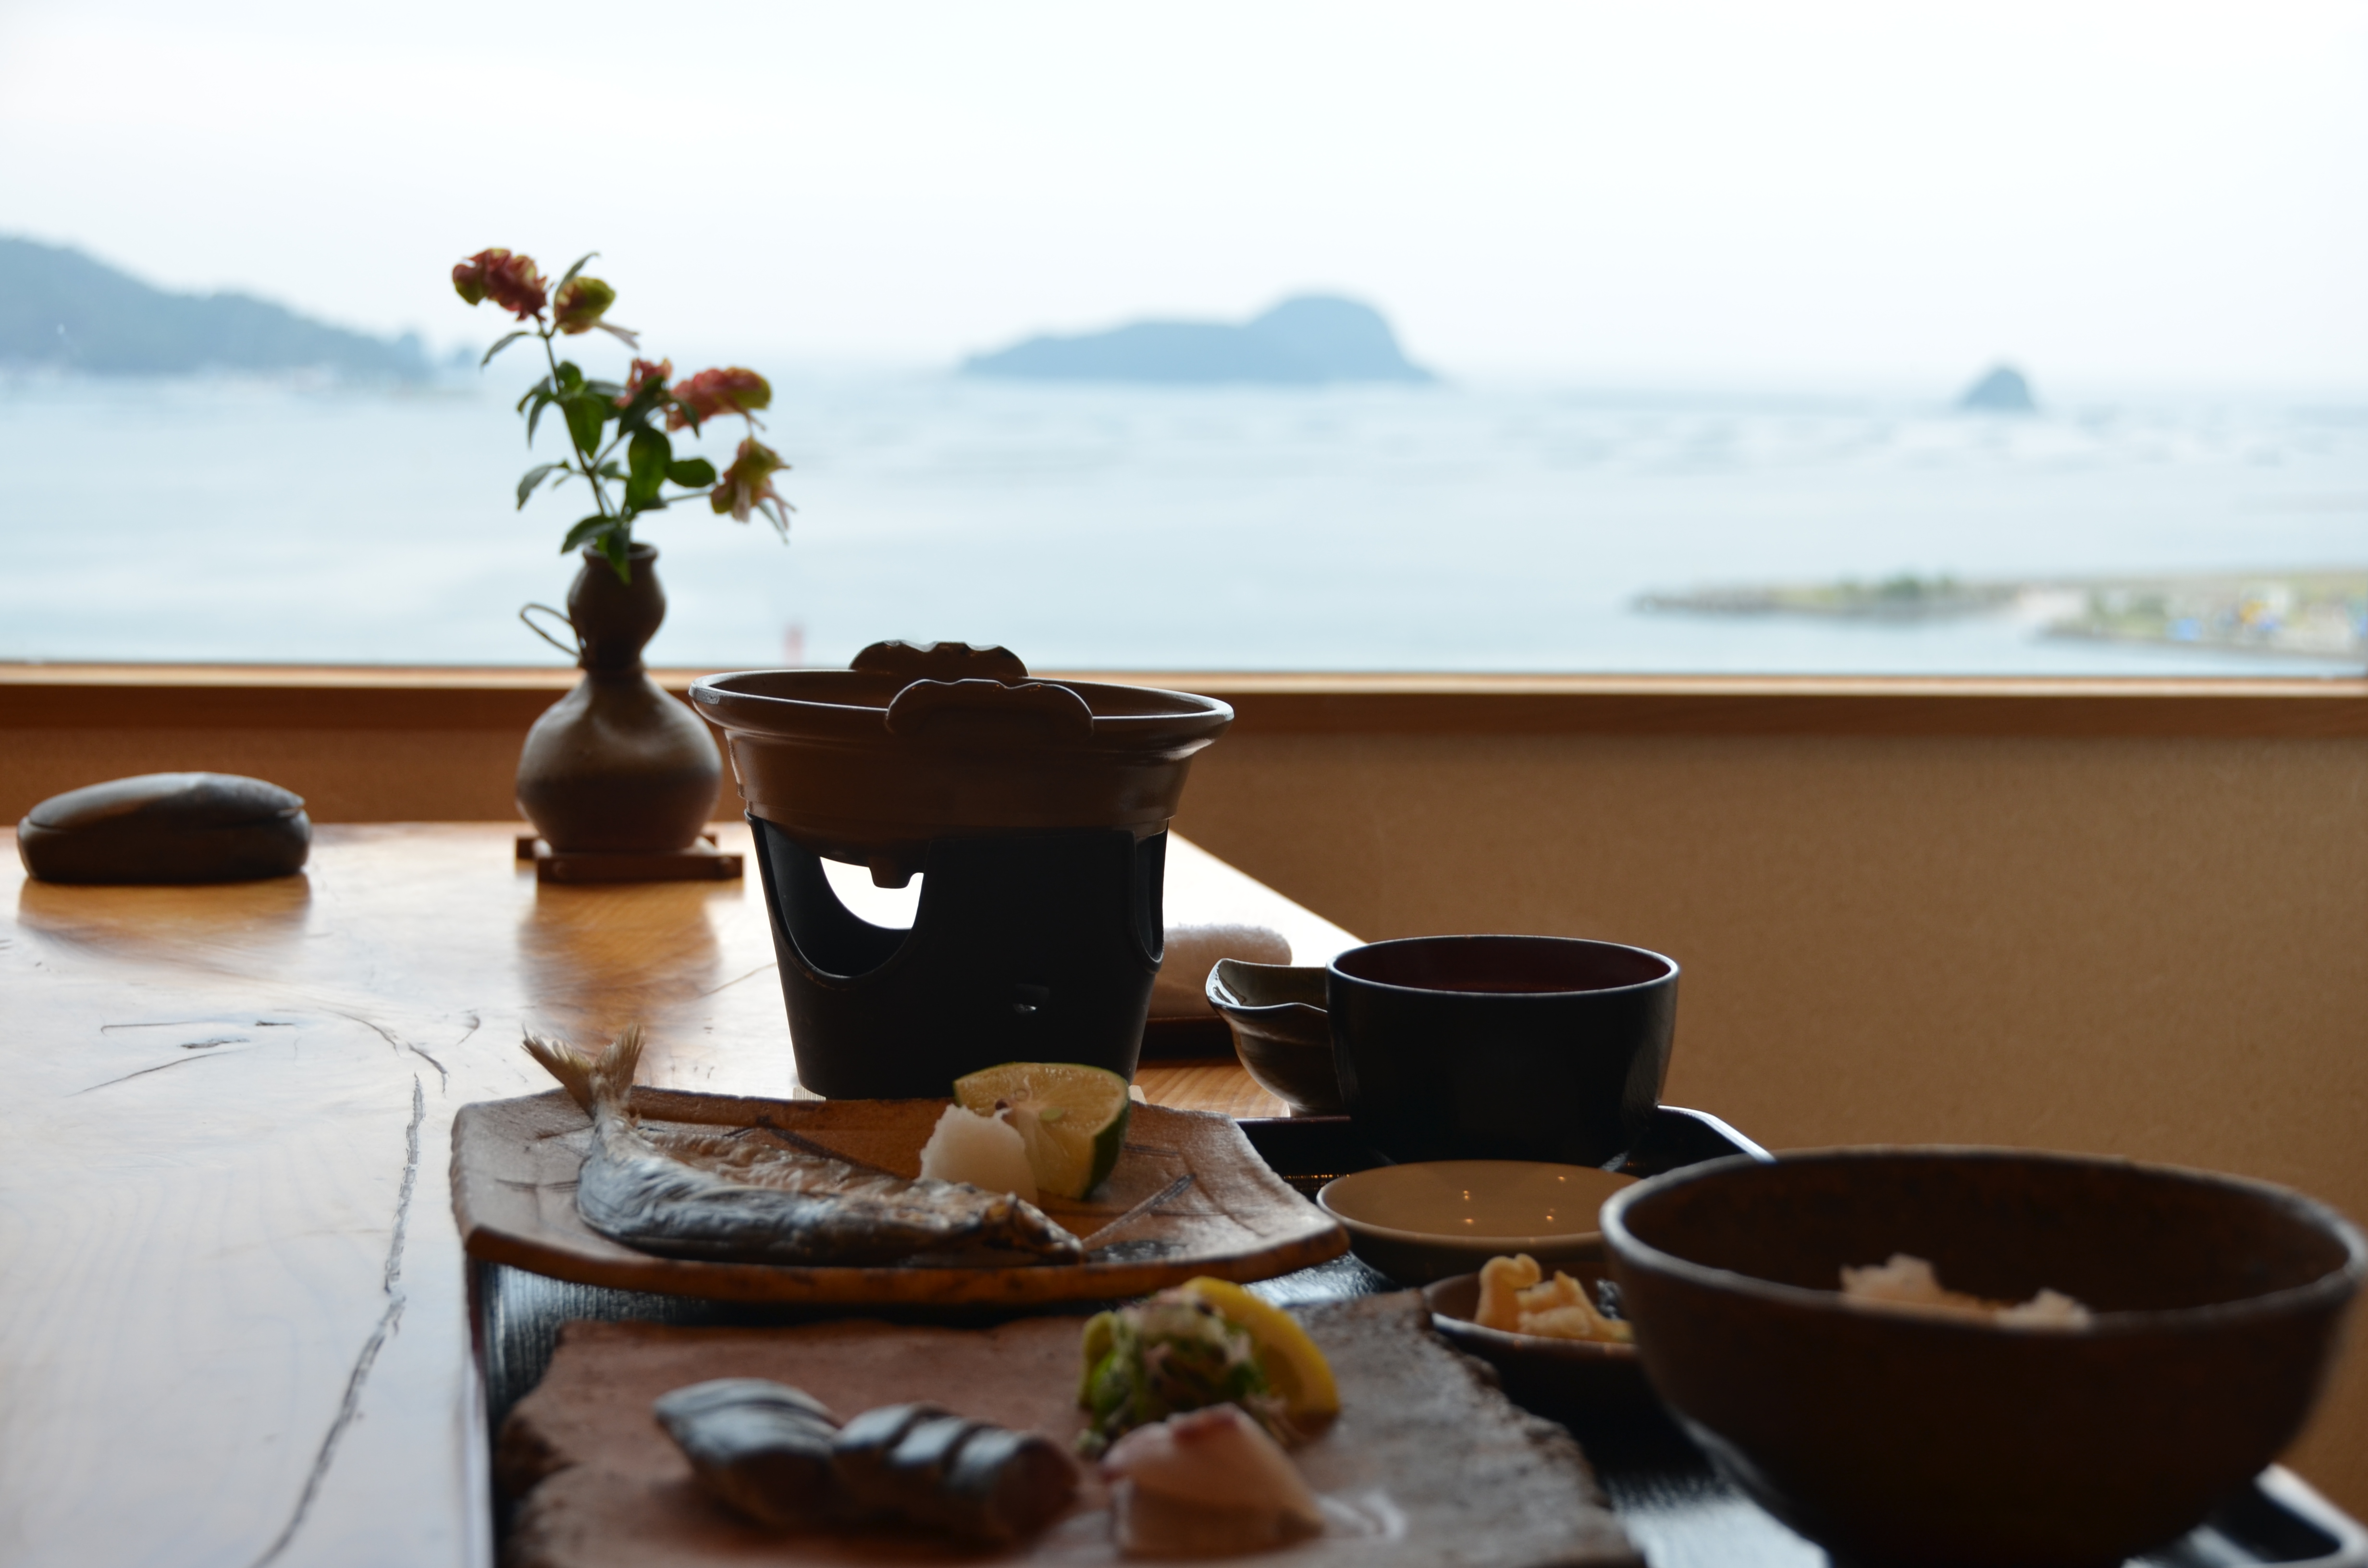 北浦湾を眺めながら、個室にてこだわりの朝食をお召し上がりください。